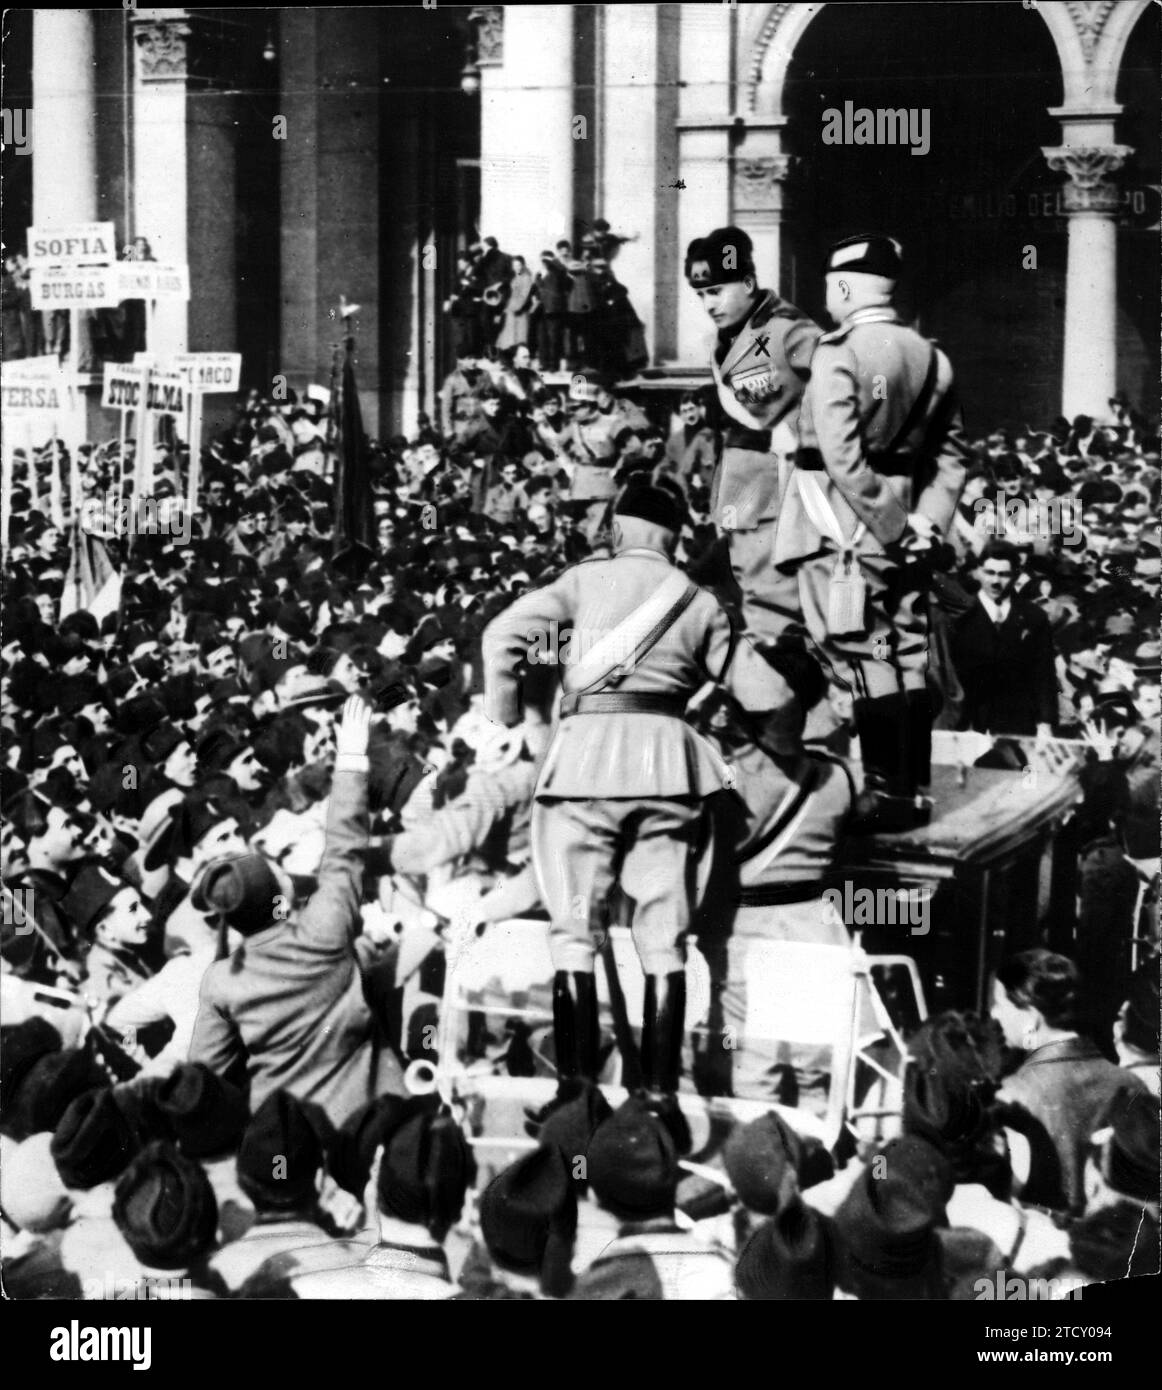 10/28/1925. Der Regierungschef Benito Mussolini hält eine Rede auf der Piazza del Duomo in Mailand während der Demonstration anlässlich des dritten Jahrestages des "Marsches auf Rom". Quelle: Album / Archivo ABC / Vidal Stockfoto